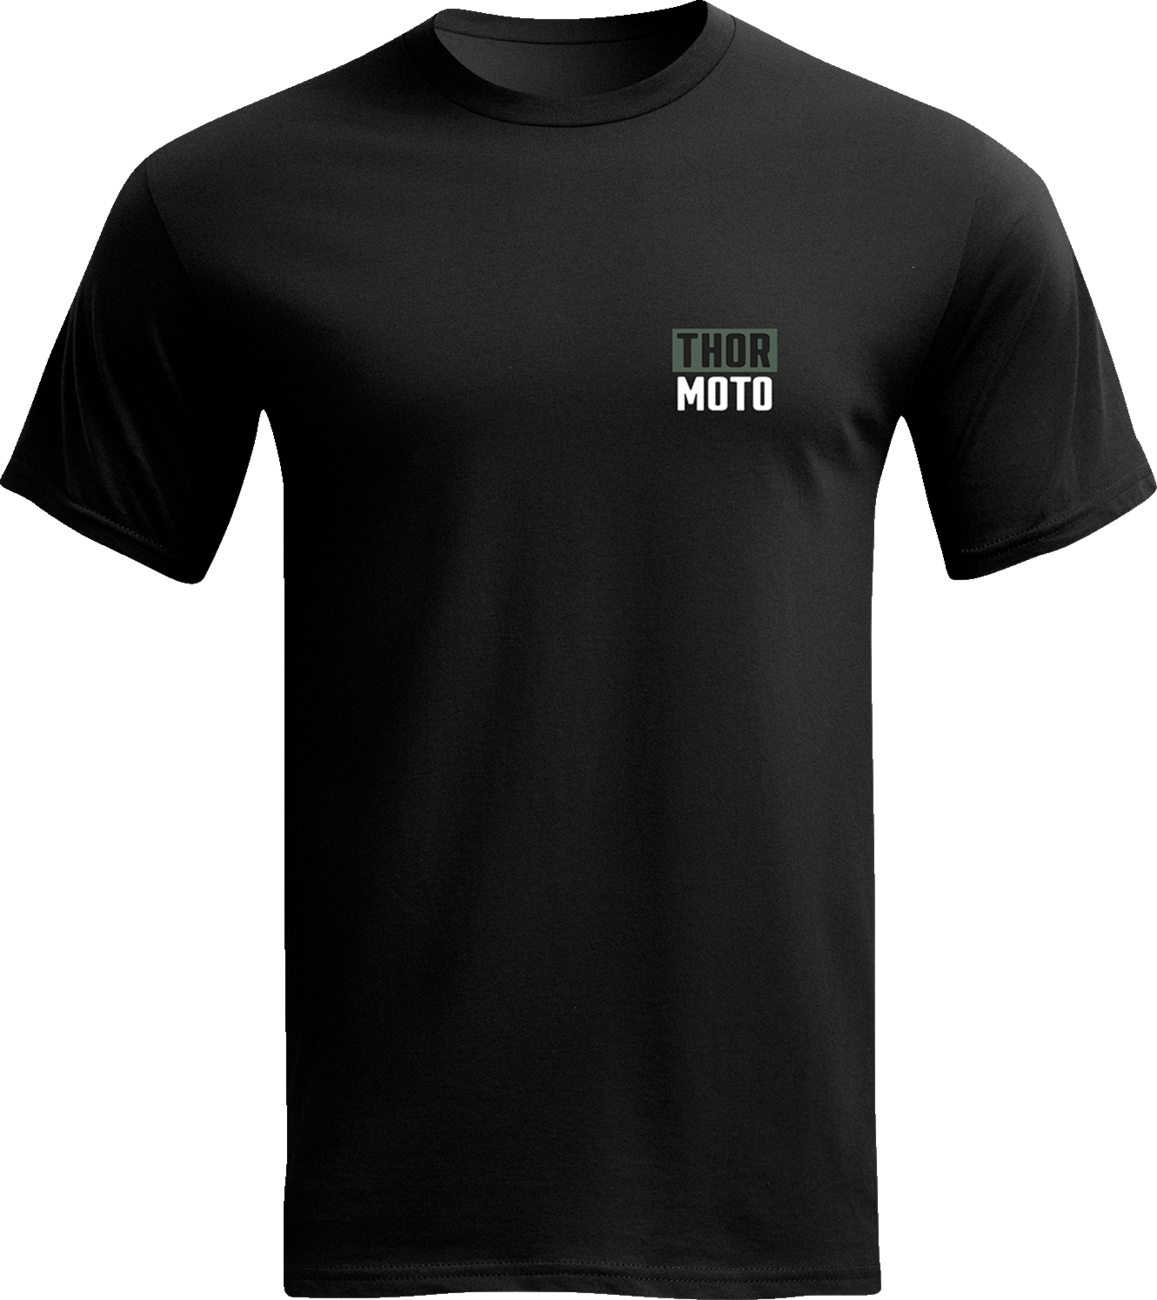 THOR Built T-Shirt - Black - Medium 3030-23547